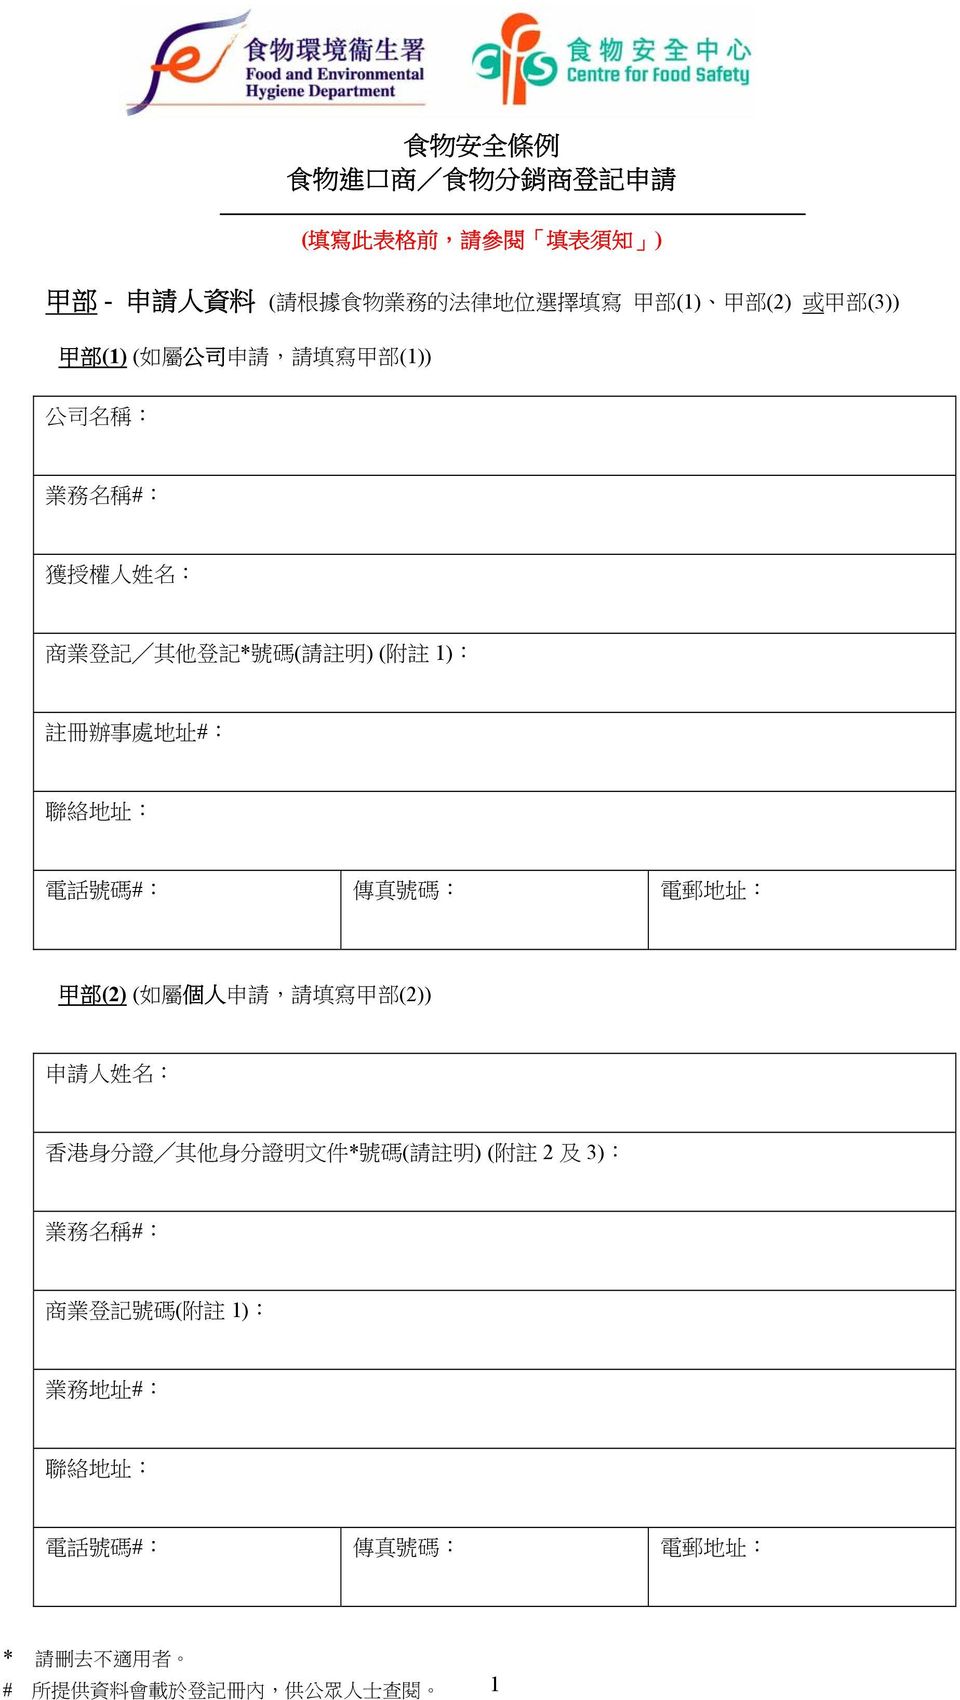 地 址 : 電 話 號 碼 #: 傳 真 號 碼 : 電 郵 地 址 : 甲 部 (2) ( 如 屬 個 人 申 請, 請 填 寫 甲 部 (2)) 申 請 人 姓 名 : 香 港 身 分 證 其 他 身 分 證 明 文 件 * 號 碼 ( 請 註 明 ) ( 附 註 2 及 3):